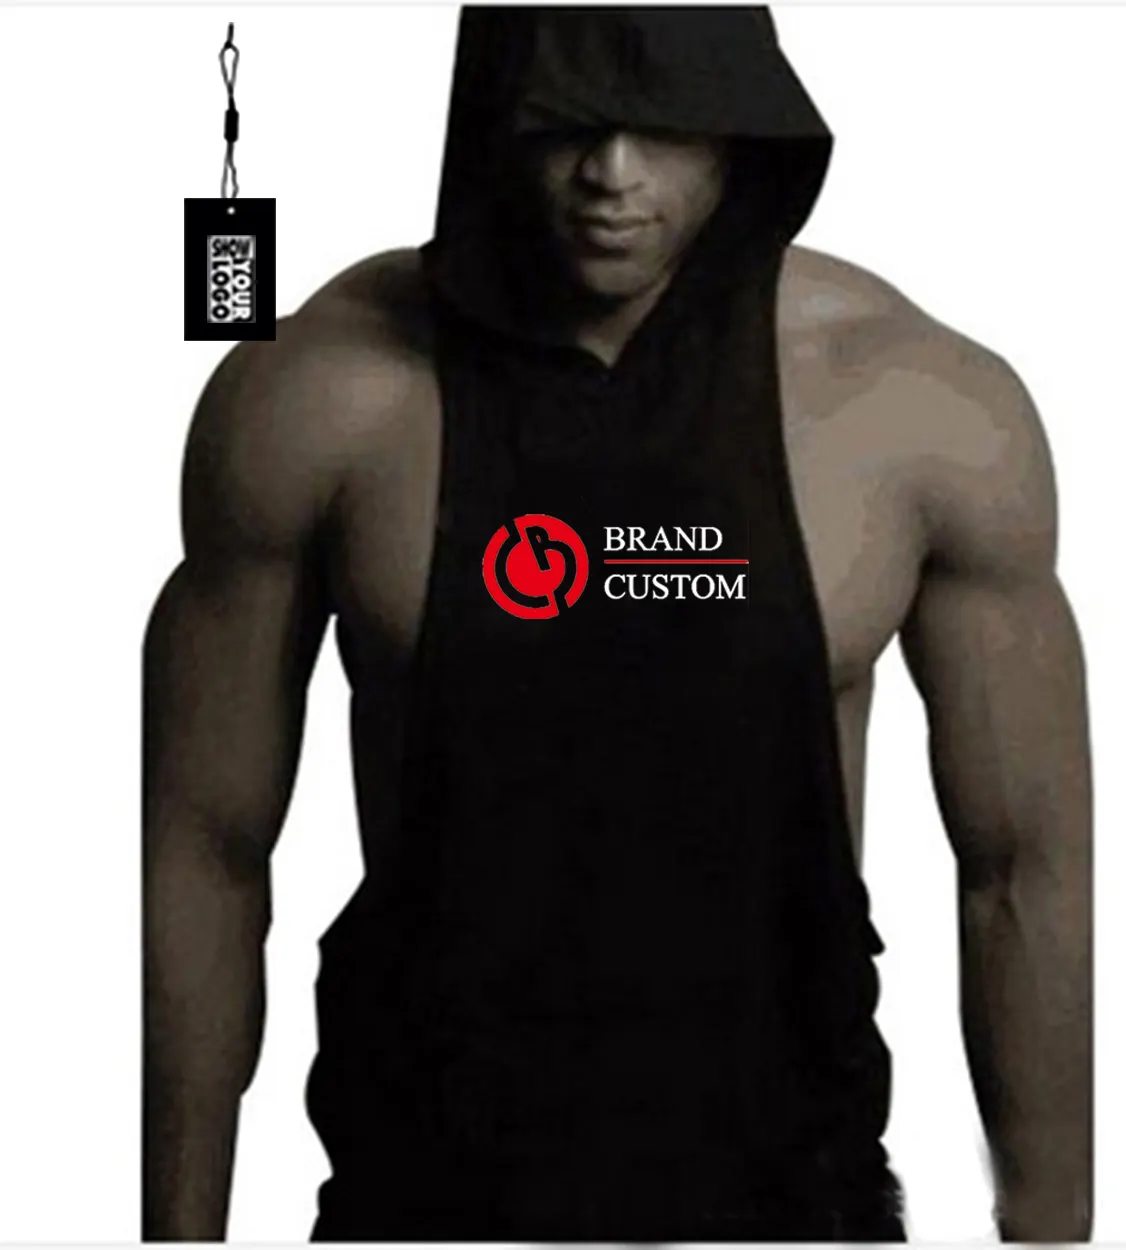 Custom Katoen Zomer Bodybuilding Muscle Fitness Vest Met Capuchon Training Tanktop Outdoor-Fit Gymshirt Voor Mannen Met Gratis Labels